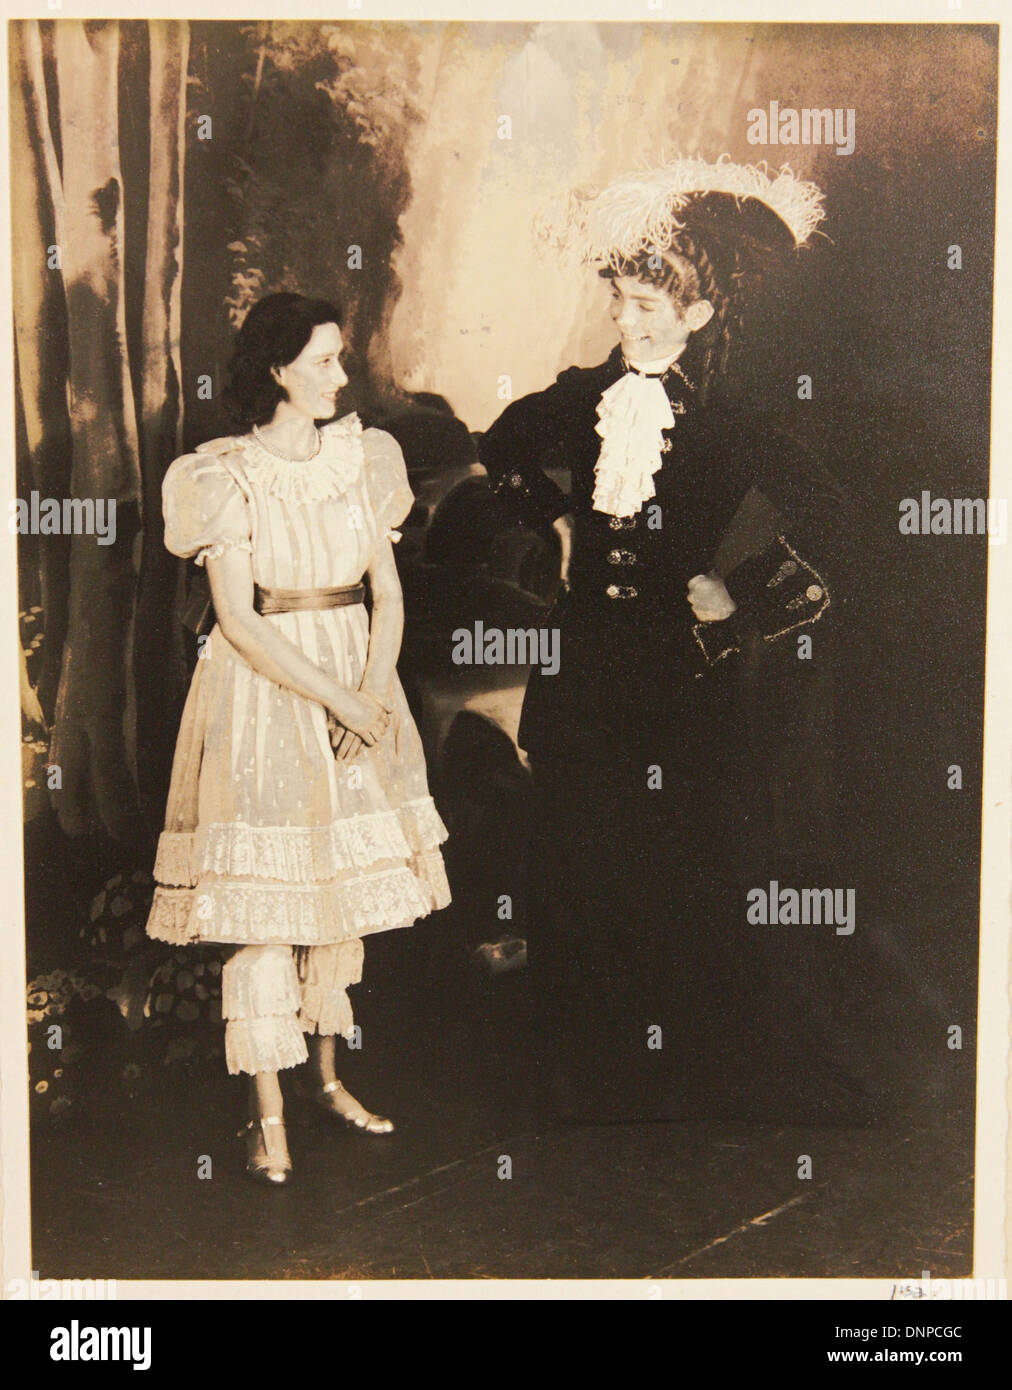 Recueillir des photographie de la princesse Margaret et Cyril Woods dans la vieille mère jouer Red Riding Boots, 1944 Banque D'Images